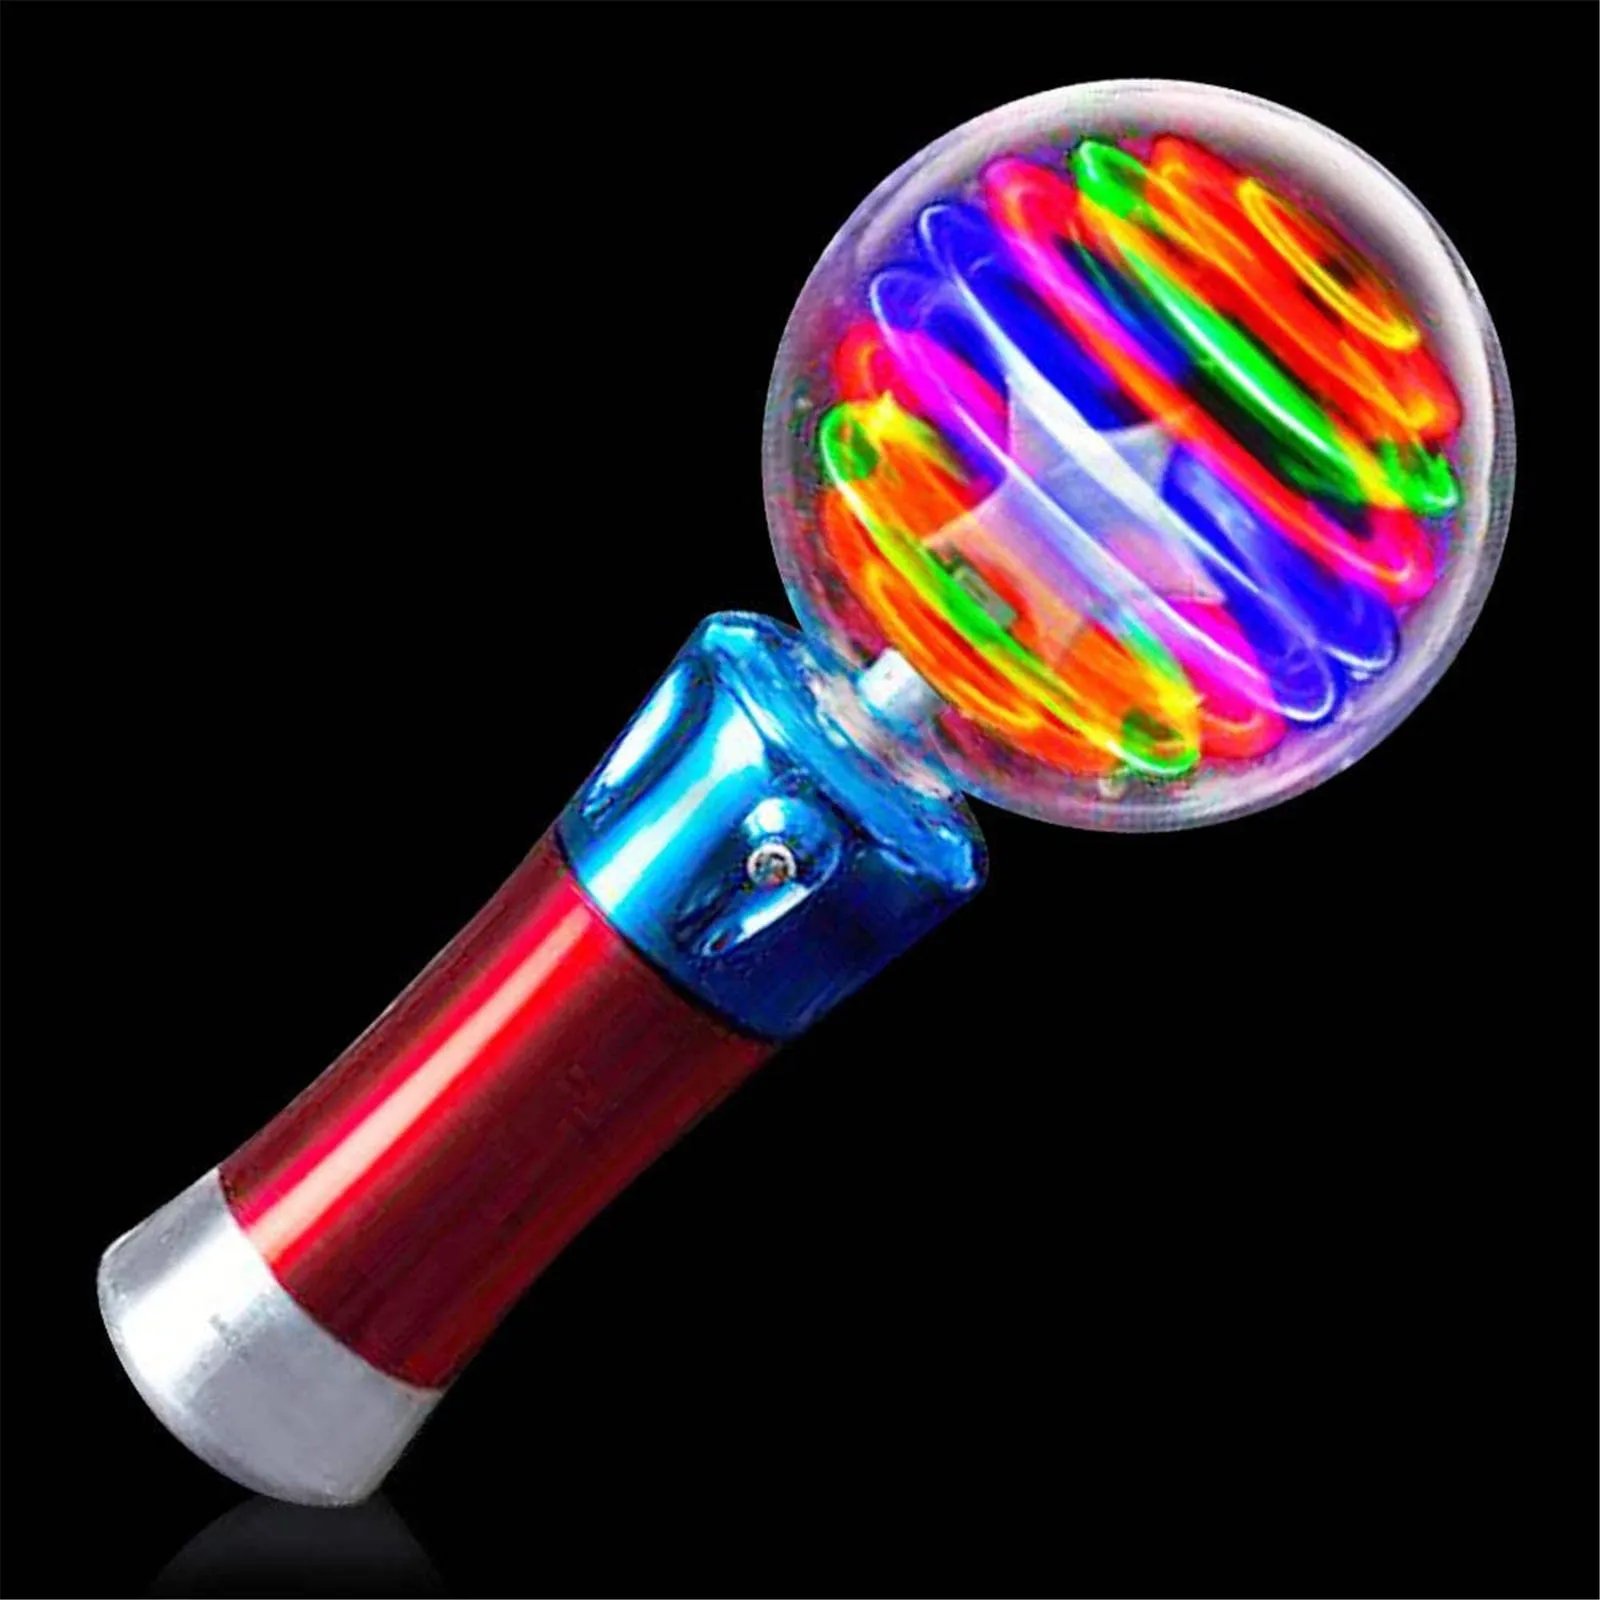 

Детская светящаяся штатив со светодиодной вспышкой вращающаяся световая игрушка интерактивная игрушка для родителей и детей праздничное ...